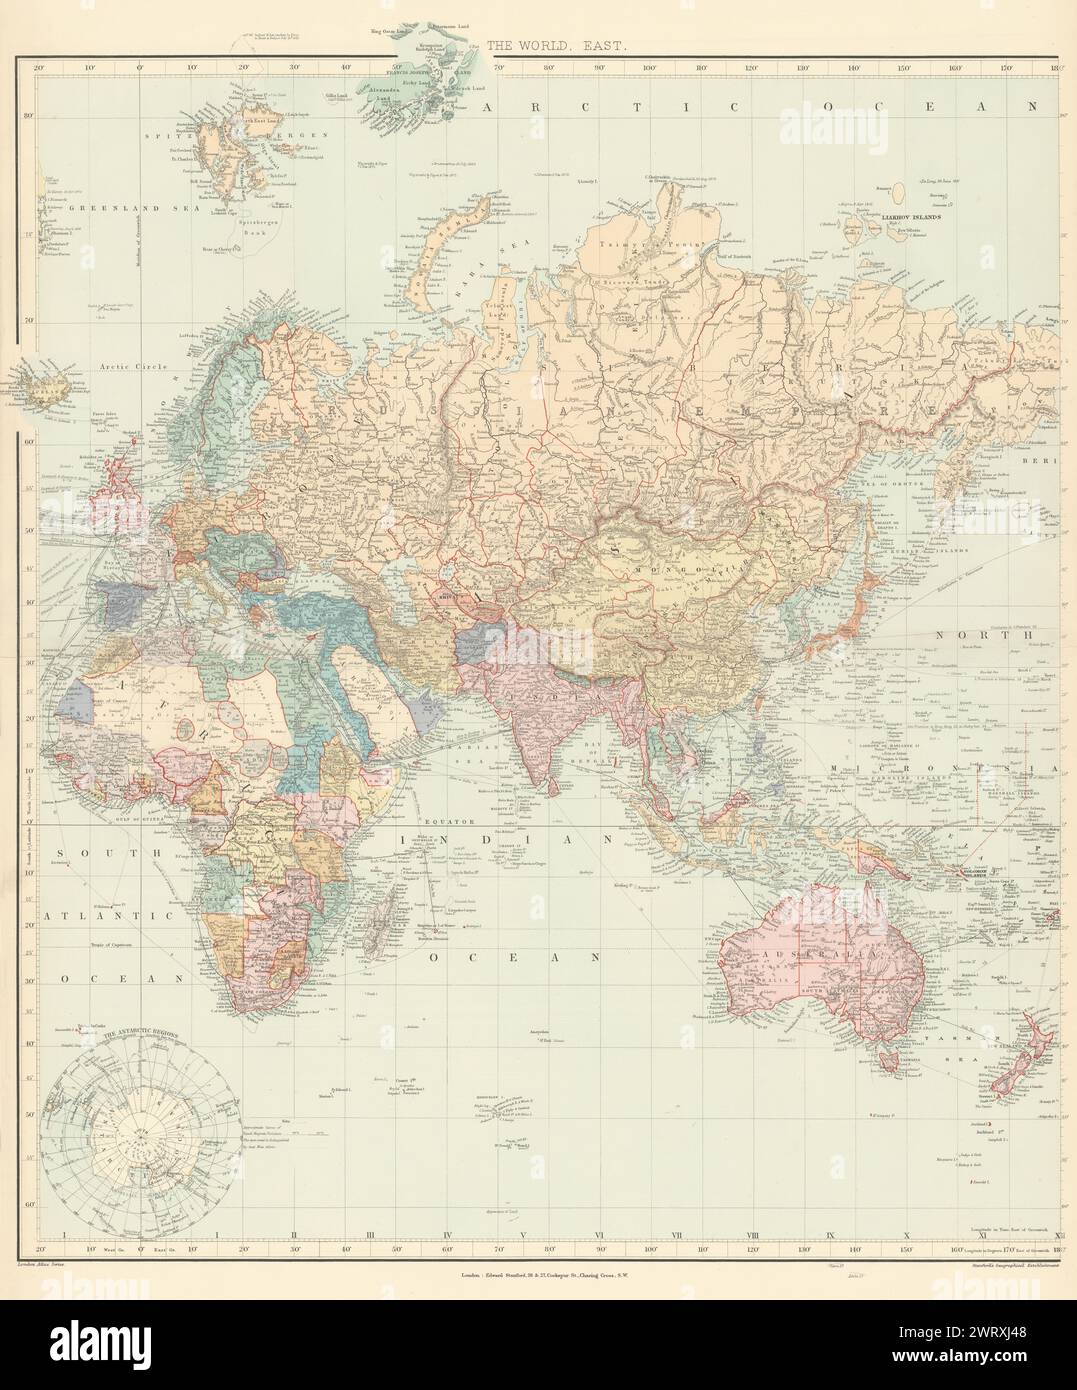 Welt auf Mercators Projektion. Östliches Blatt. Europa Asien Afrika STANFORD 1896 Karte Stockfoto